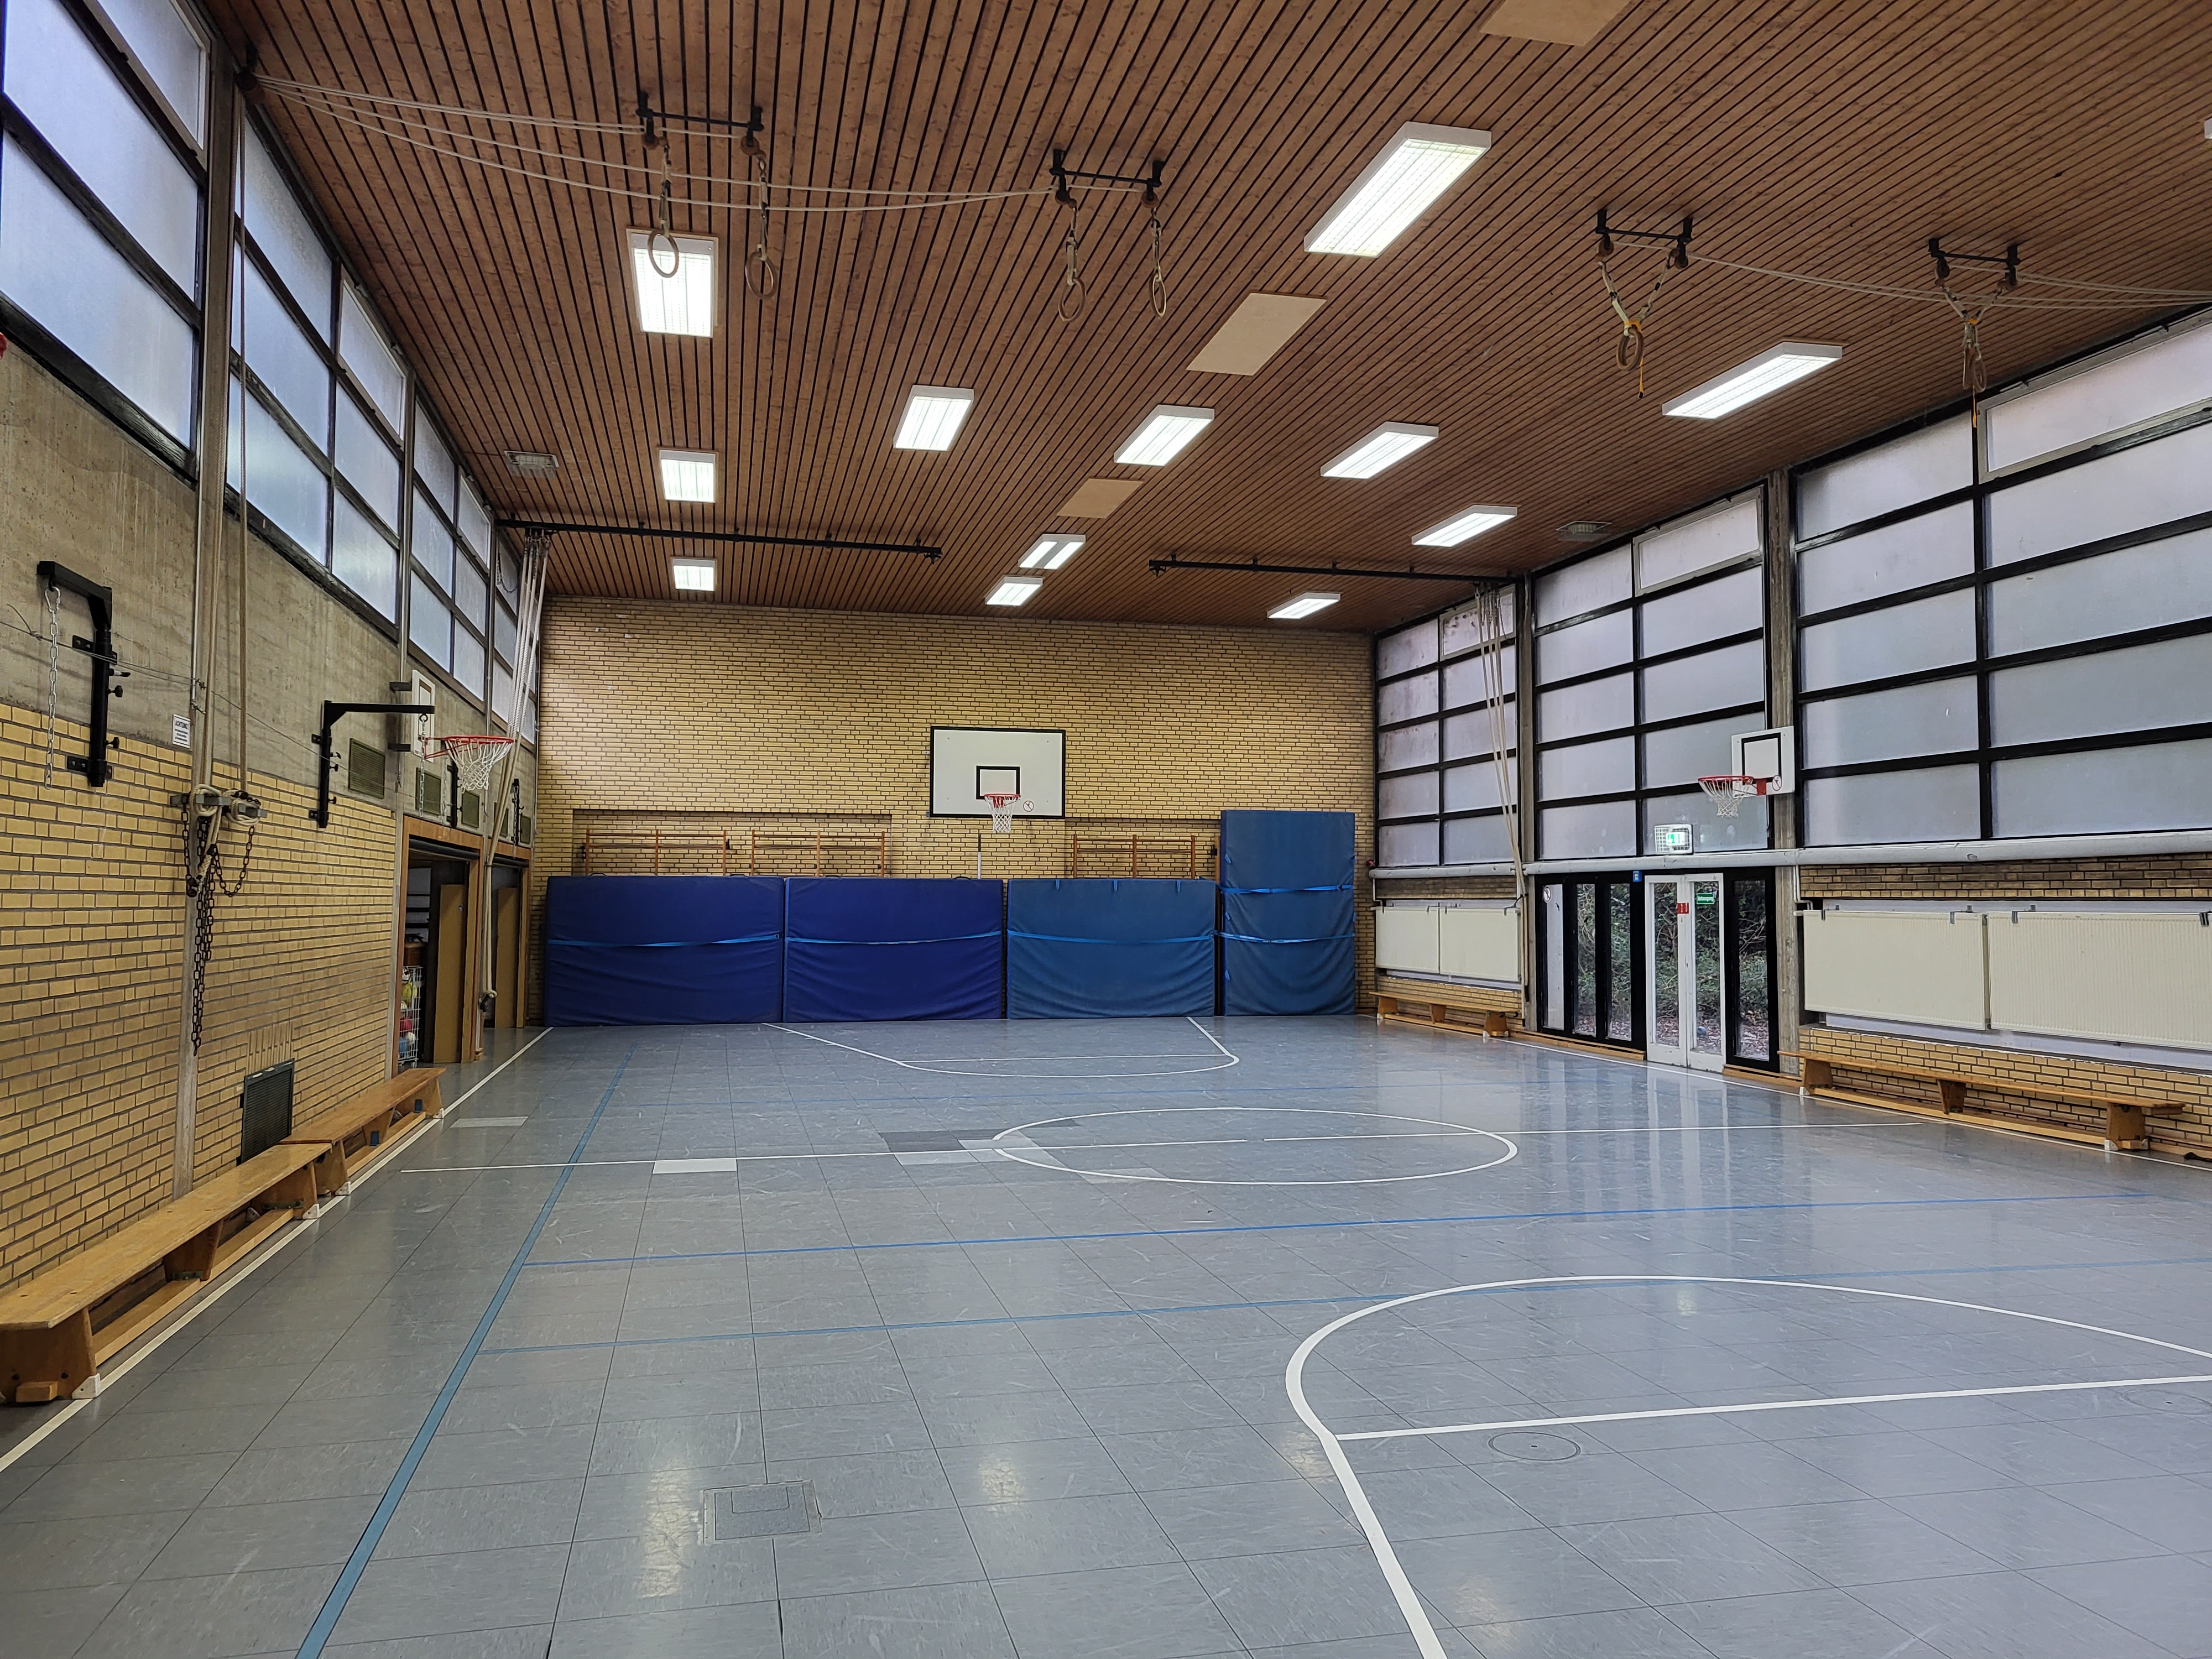 Das Bild zeigt eine Sporthalle von innen. An der Wand lehnen vier große blaue Matten.